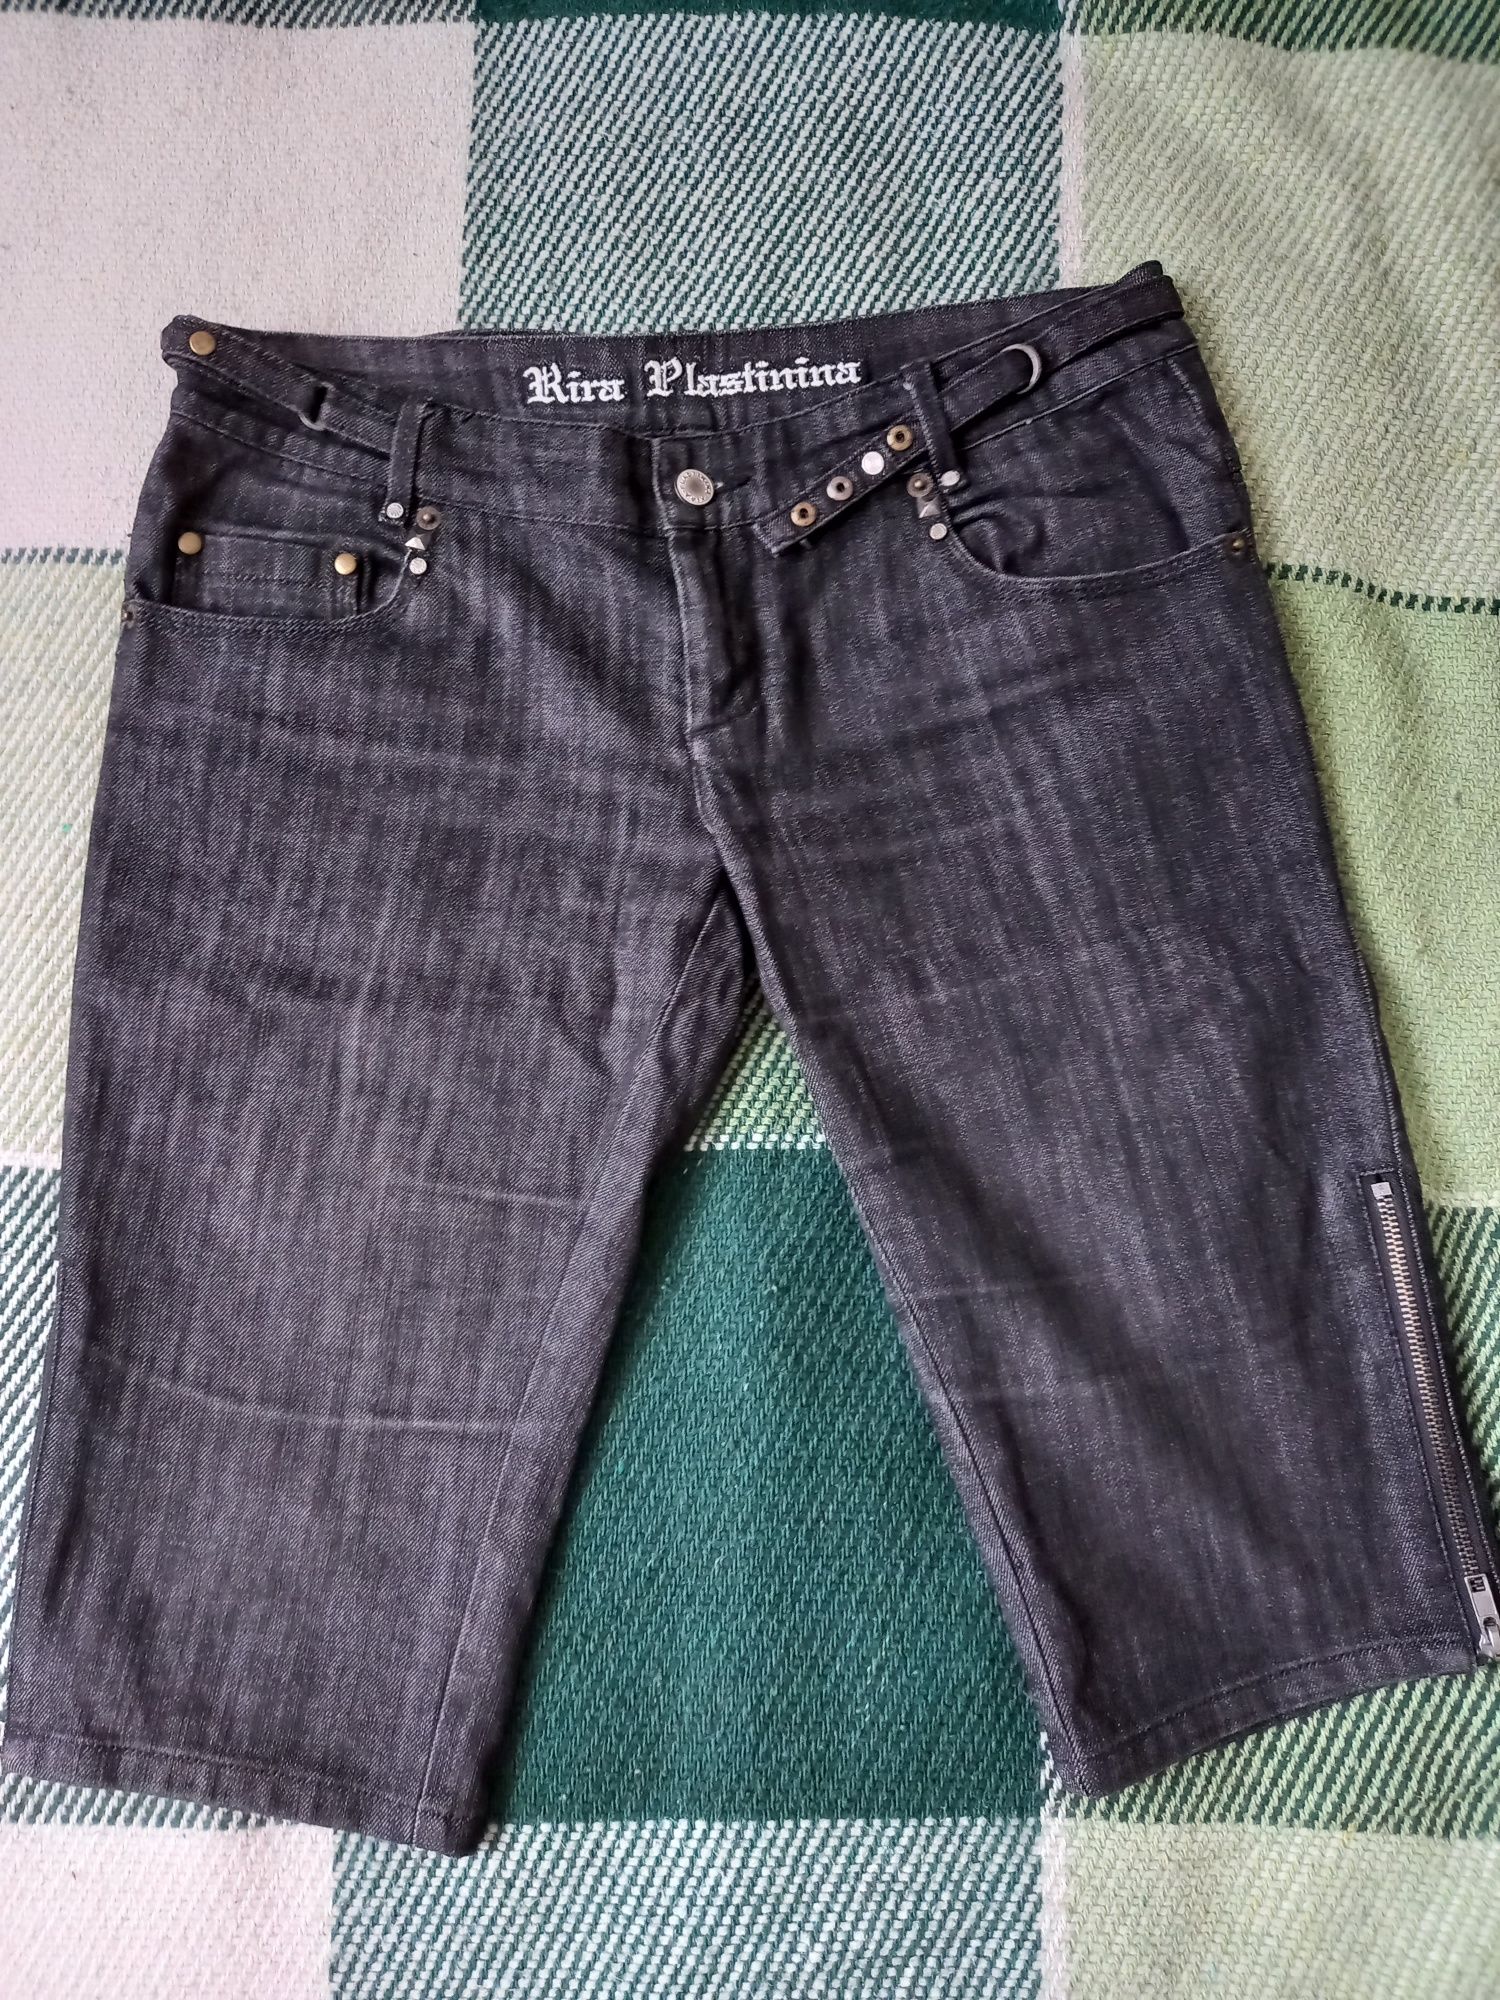 Бриджи kira platinina чорні джинси брюки капрі штаны кира пластинина